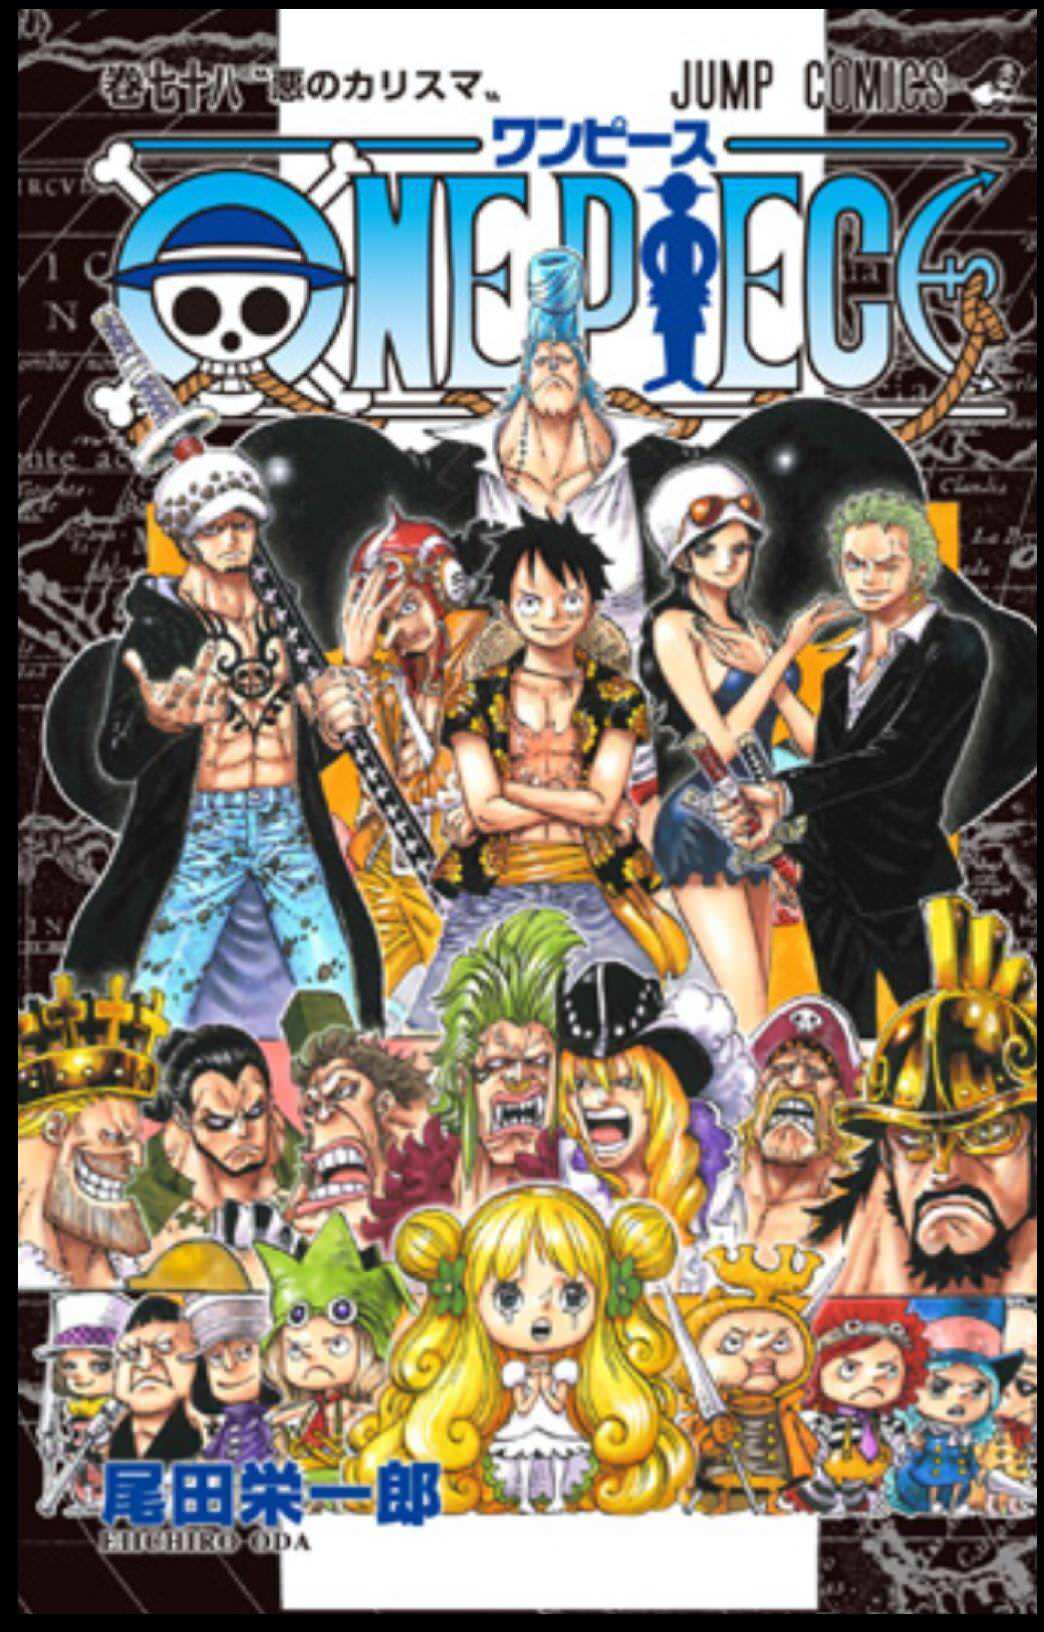 趣味全開の気まぐれ冒険記 One Piece 速報 ワンピース 78巻 表紙大公開